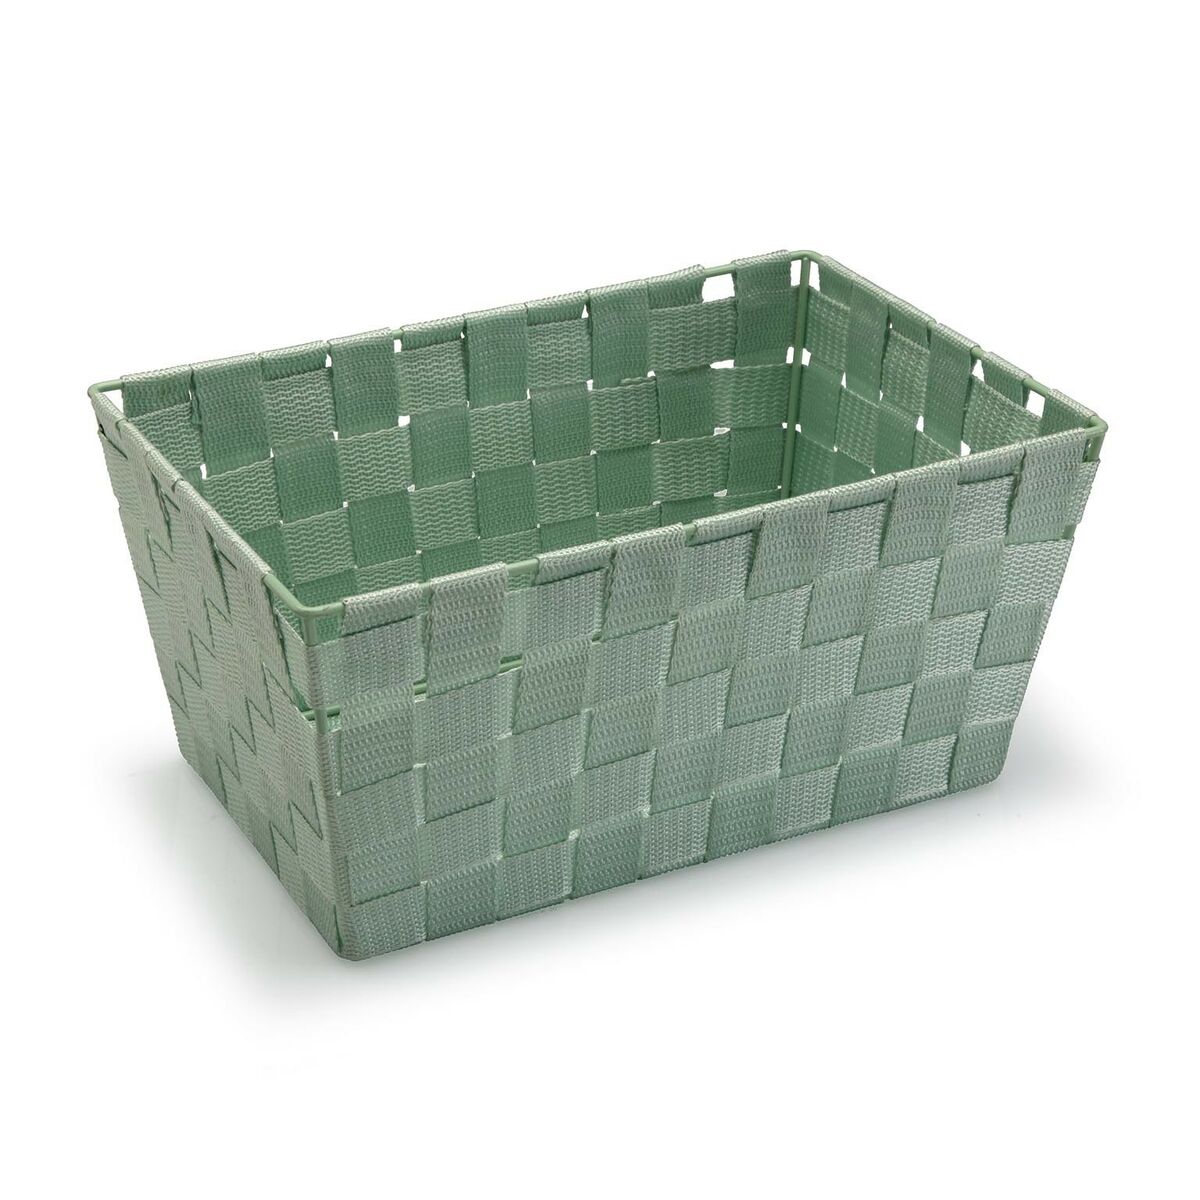 Basket Versa Large Green Textile 20 x 15 x 30 cm